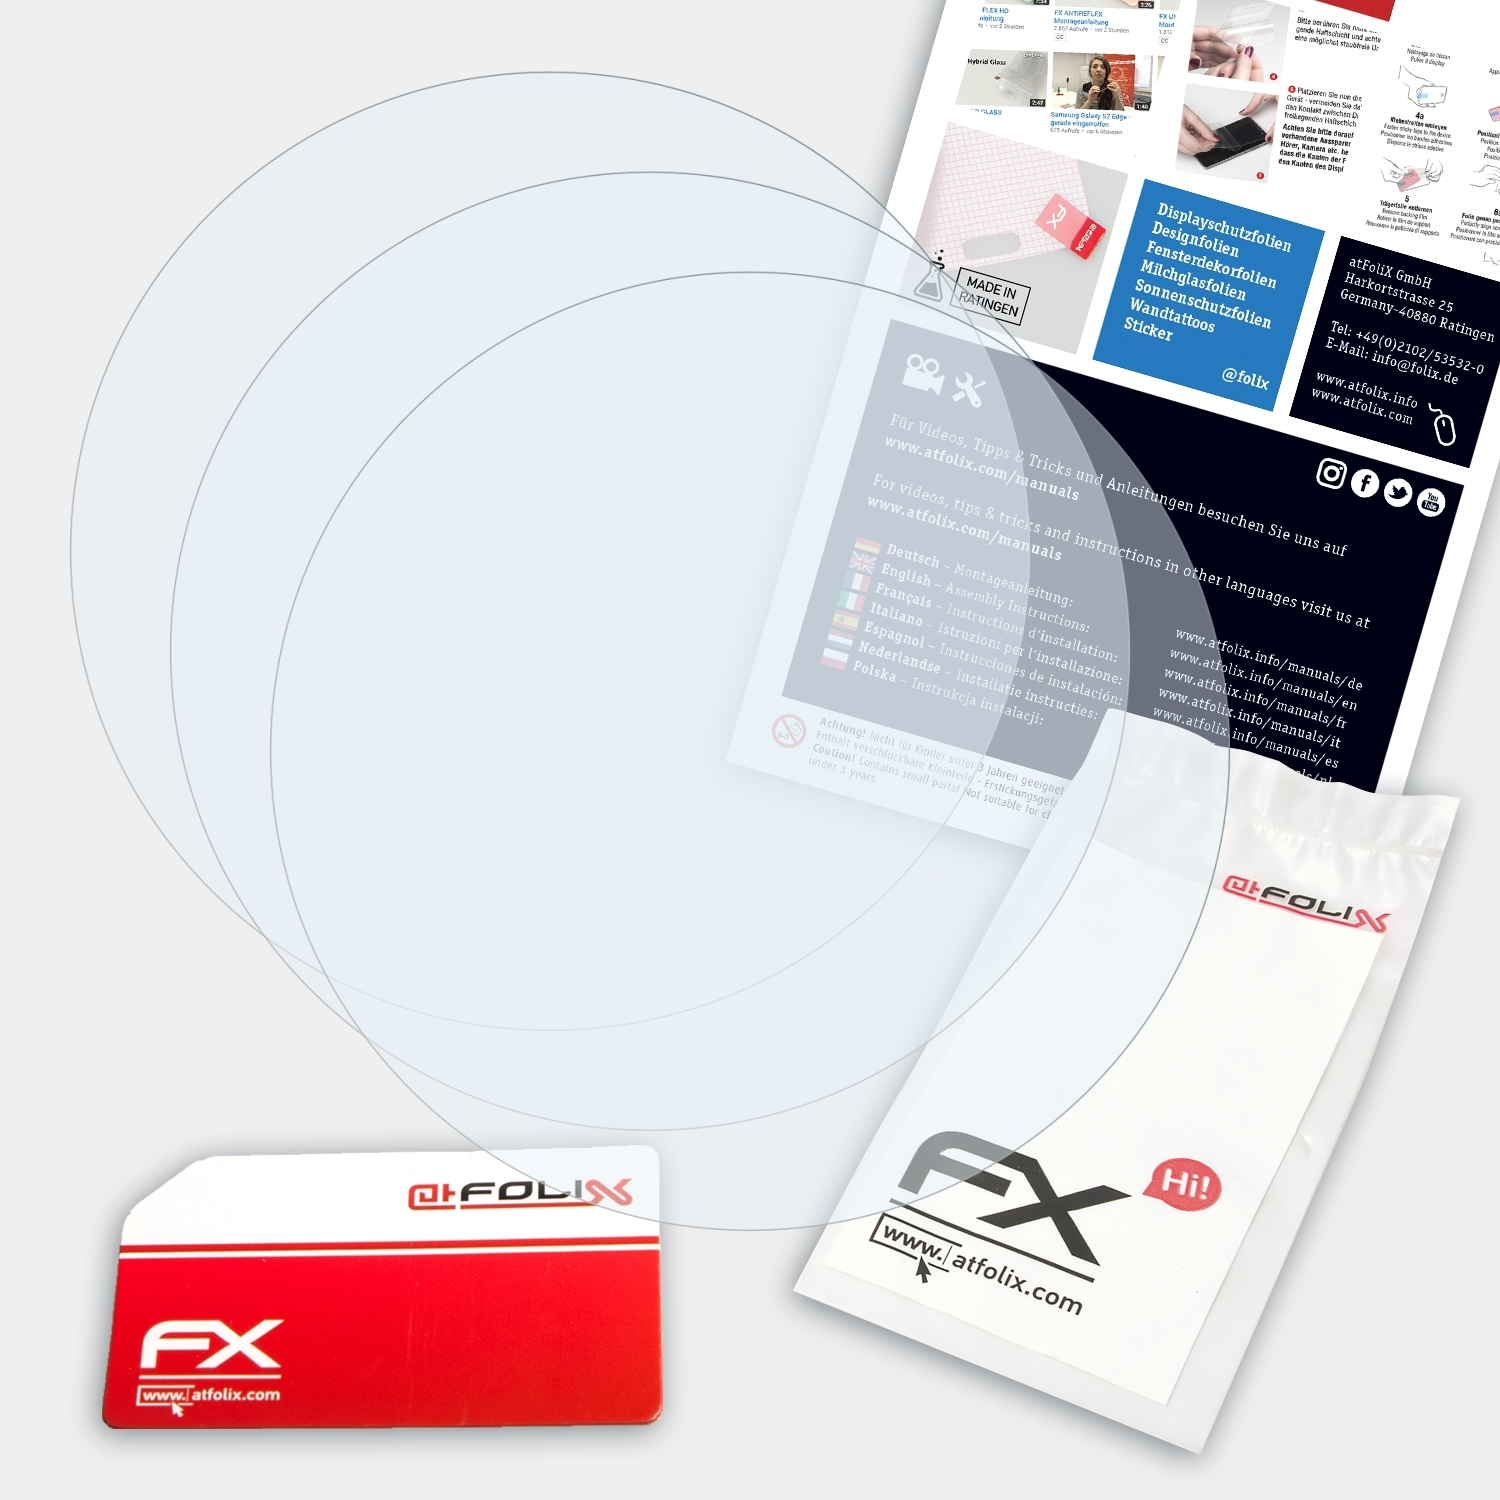 ATFOLIX Skagen 3x Falster) FX-Clear Displayschutz(für